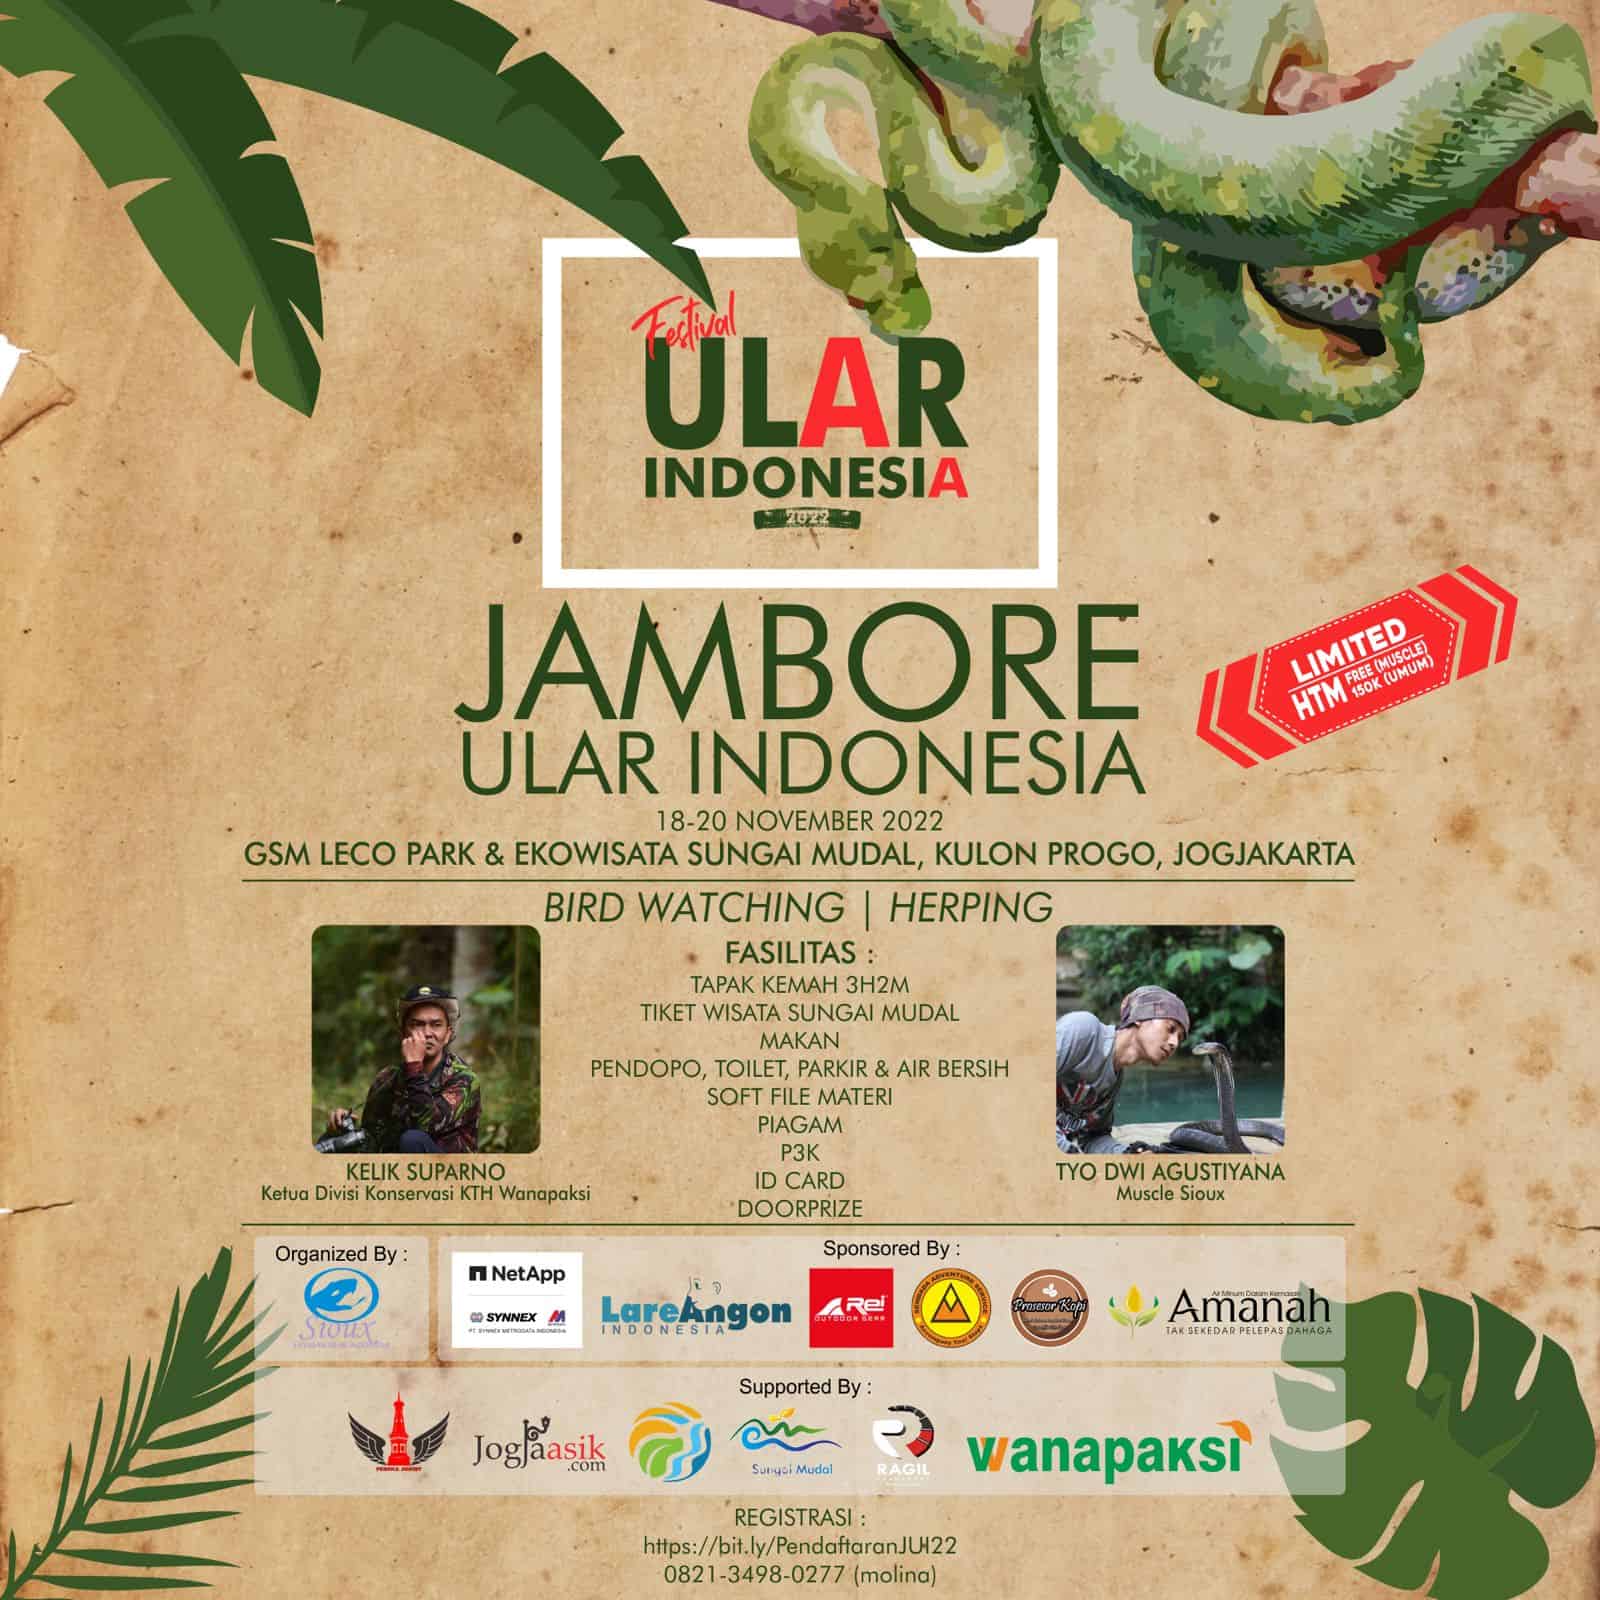 Jambore Ular Indonesia 2022